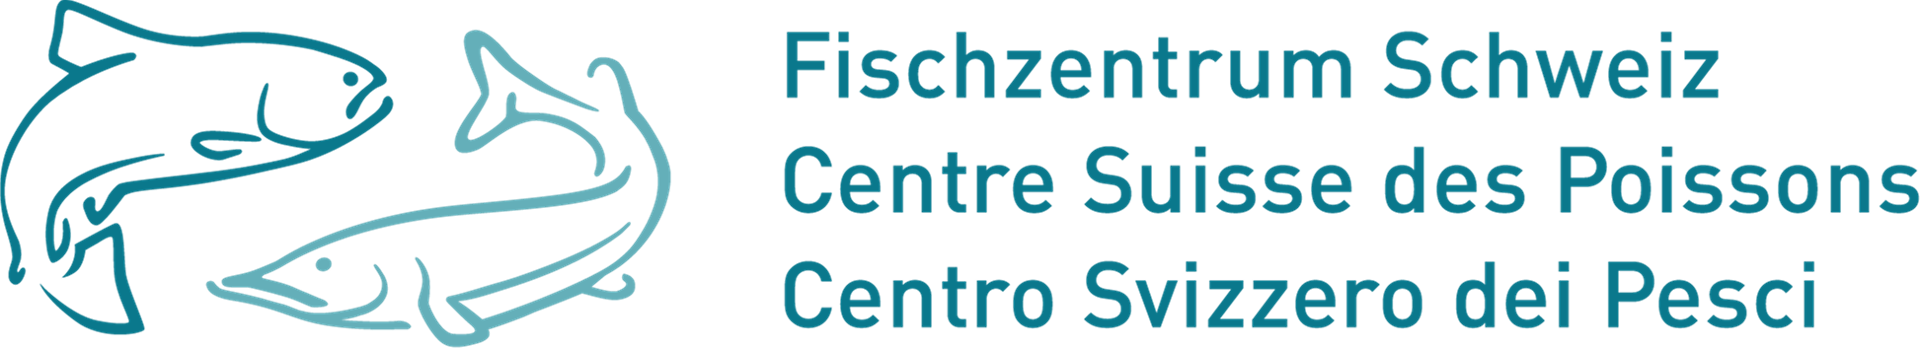 Logo Stiftung Fischzentrum Schweiz